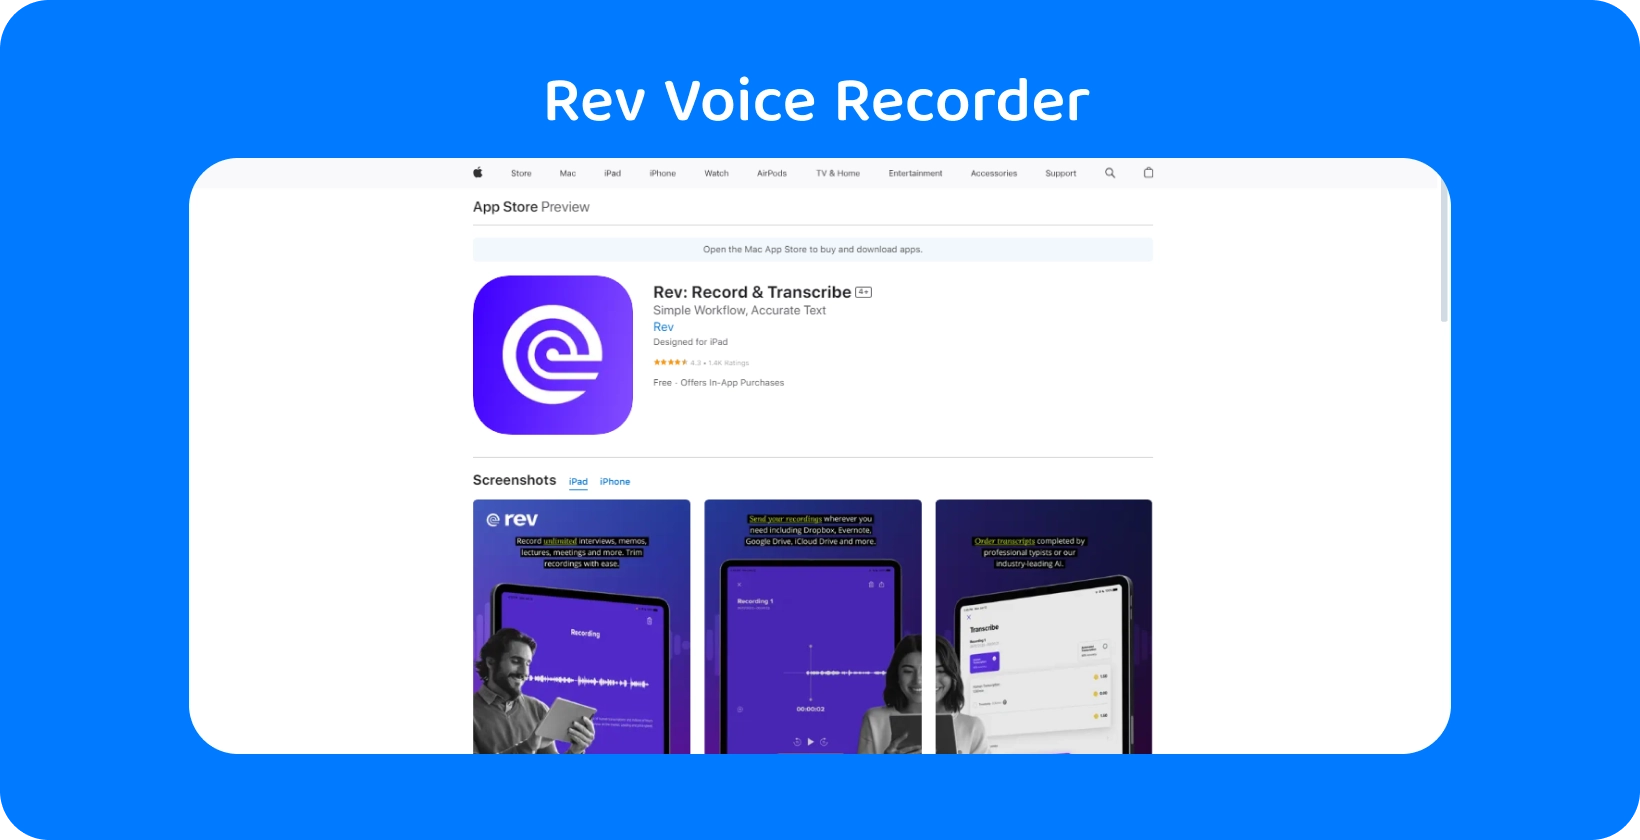 Rev Voice Recorder aplicativo no Apple App Store, destacando seu design elegante e recursos de transcrição.